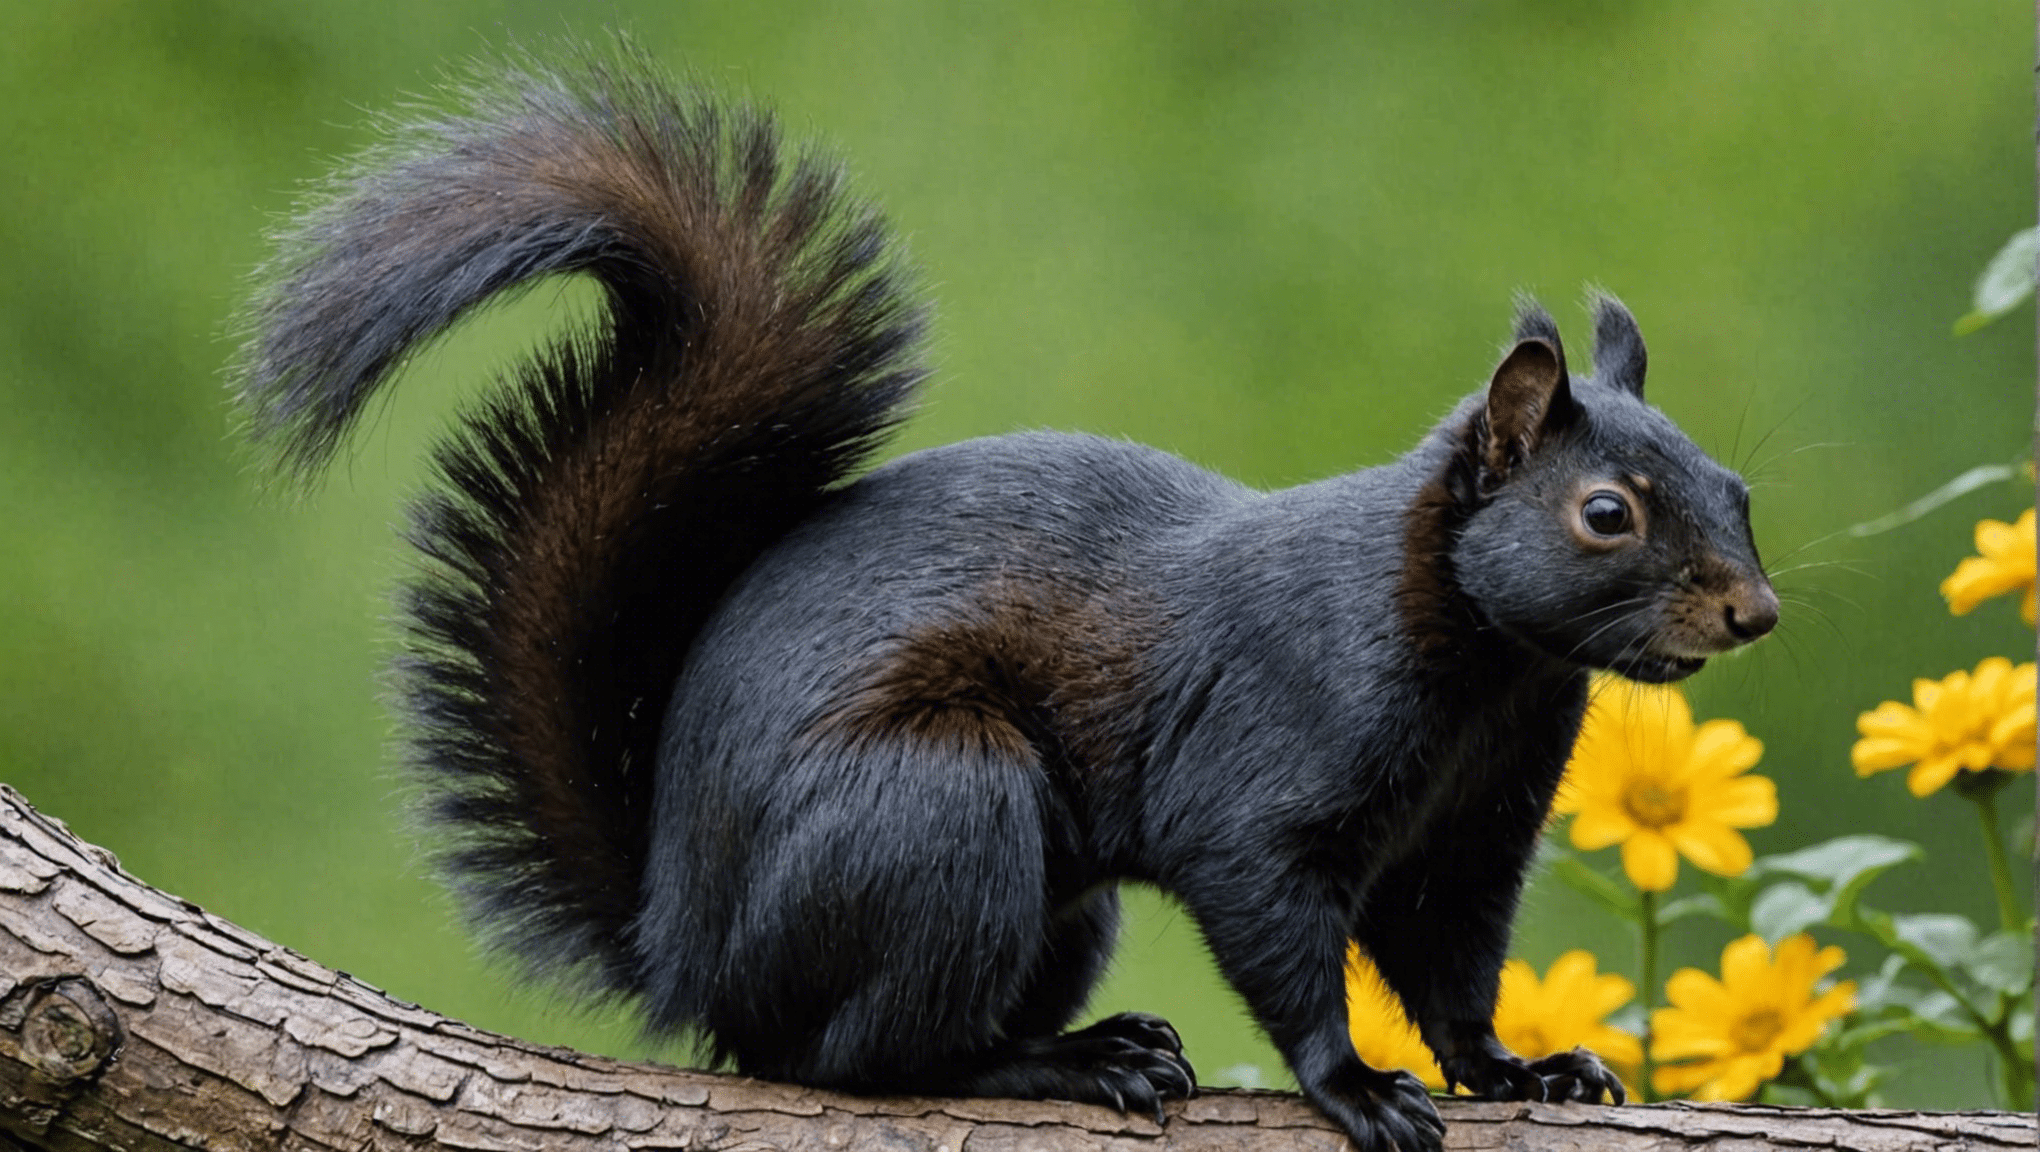 opdage den kulturelle og økologiske betydning af det sorte egern og dets indvirkning på forskellige samfund.